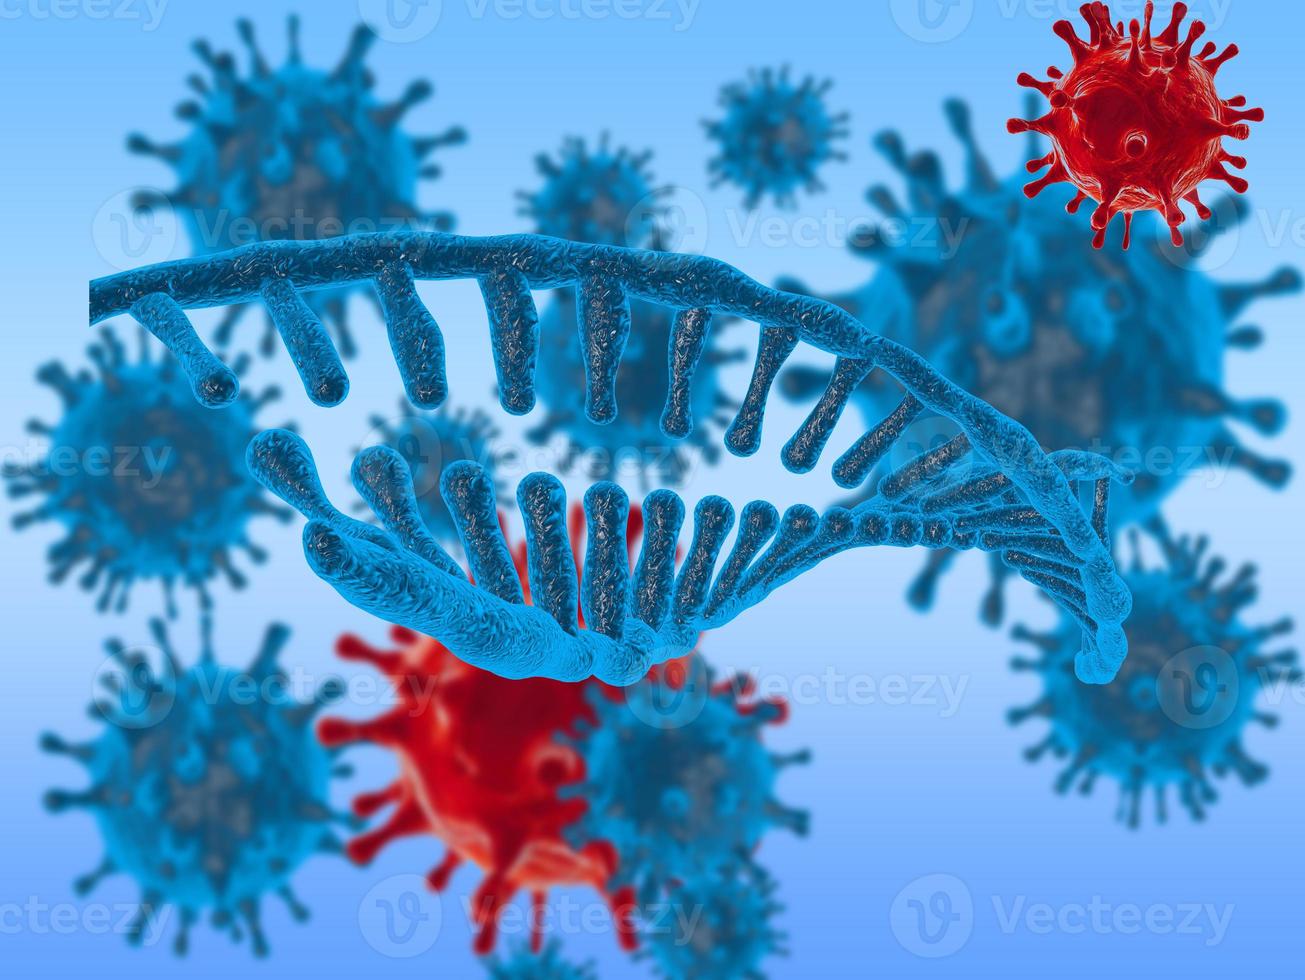 coronavirus de la gripe sobre el concepto de fondo de la tierra de búsqueda de cura y propagación de enfermedades. imagen 3d foto